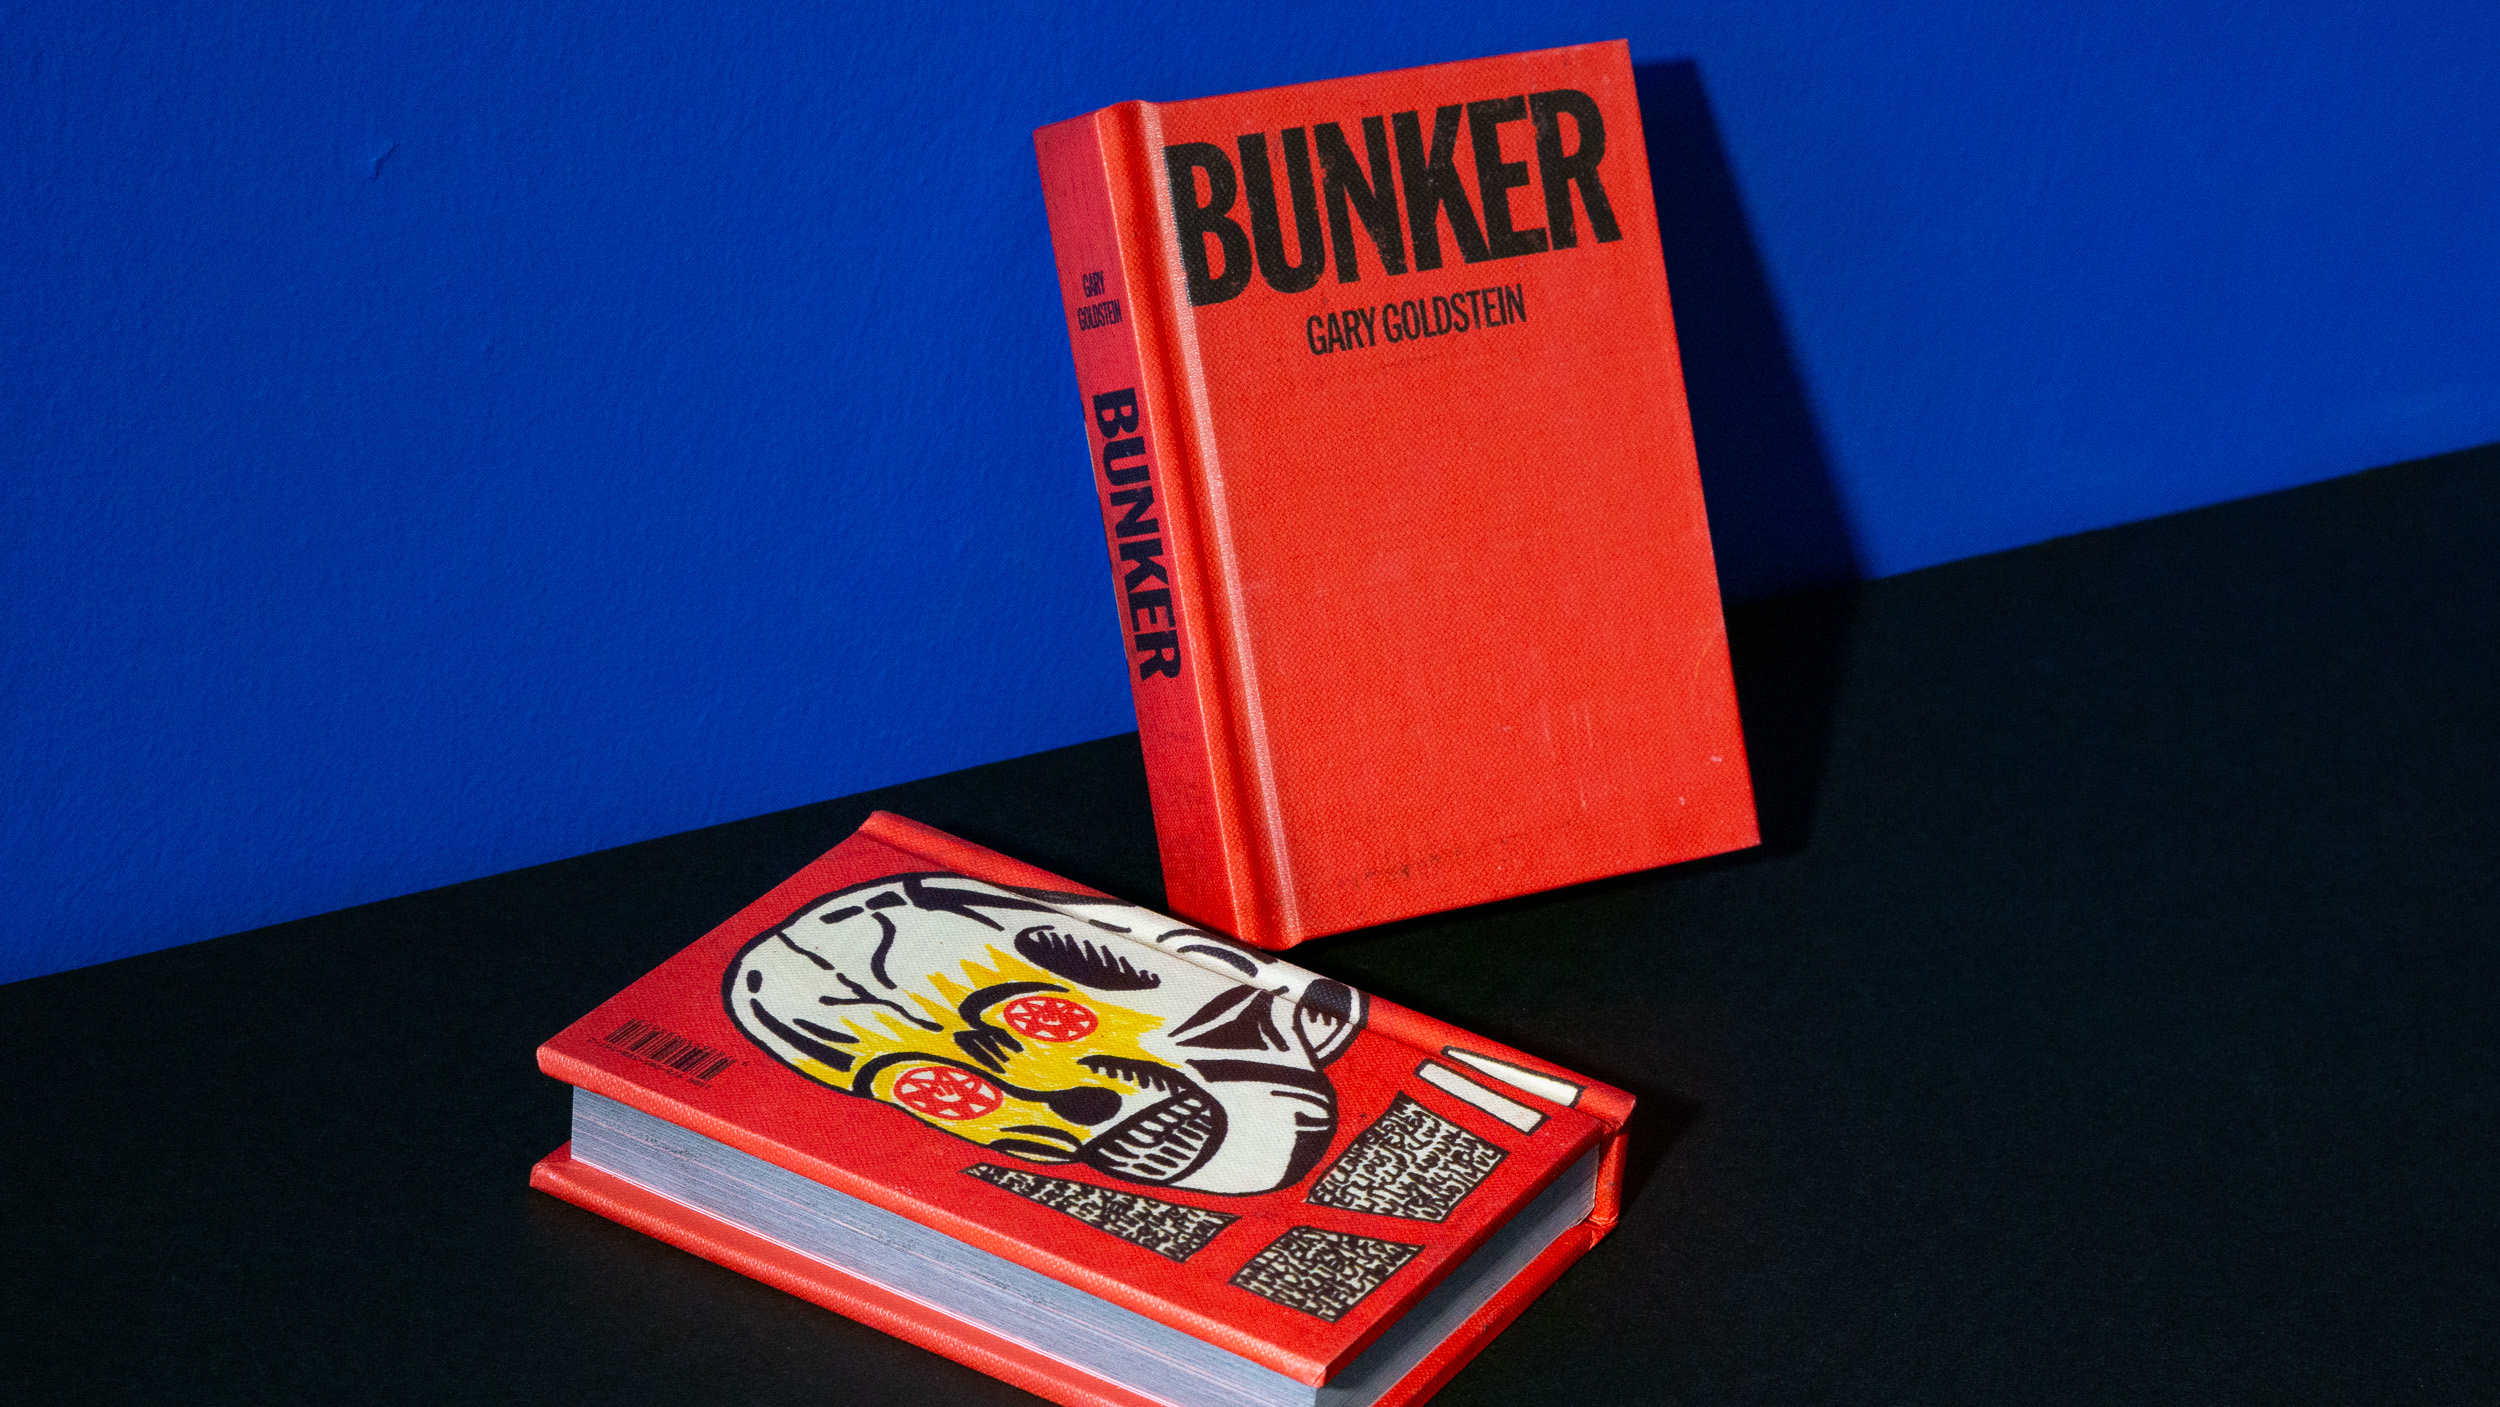 Bunker - Gary Goldstein.  design: Tal Solomon Vardy